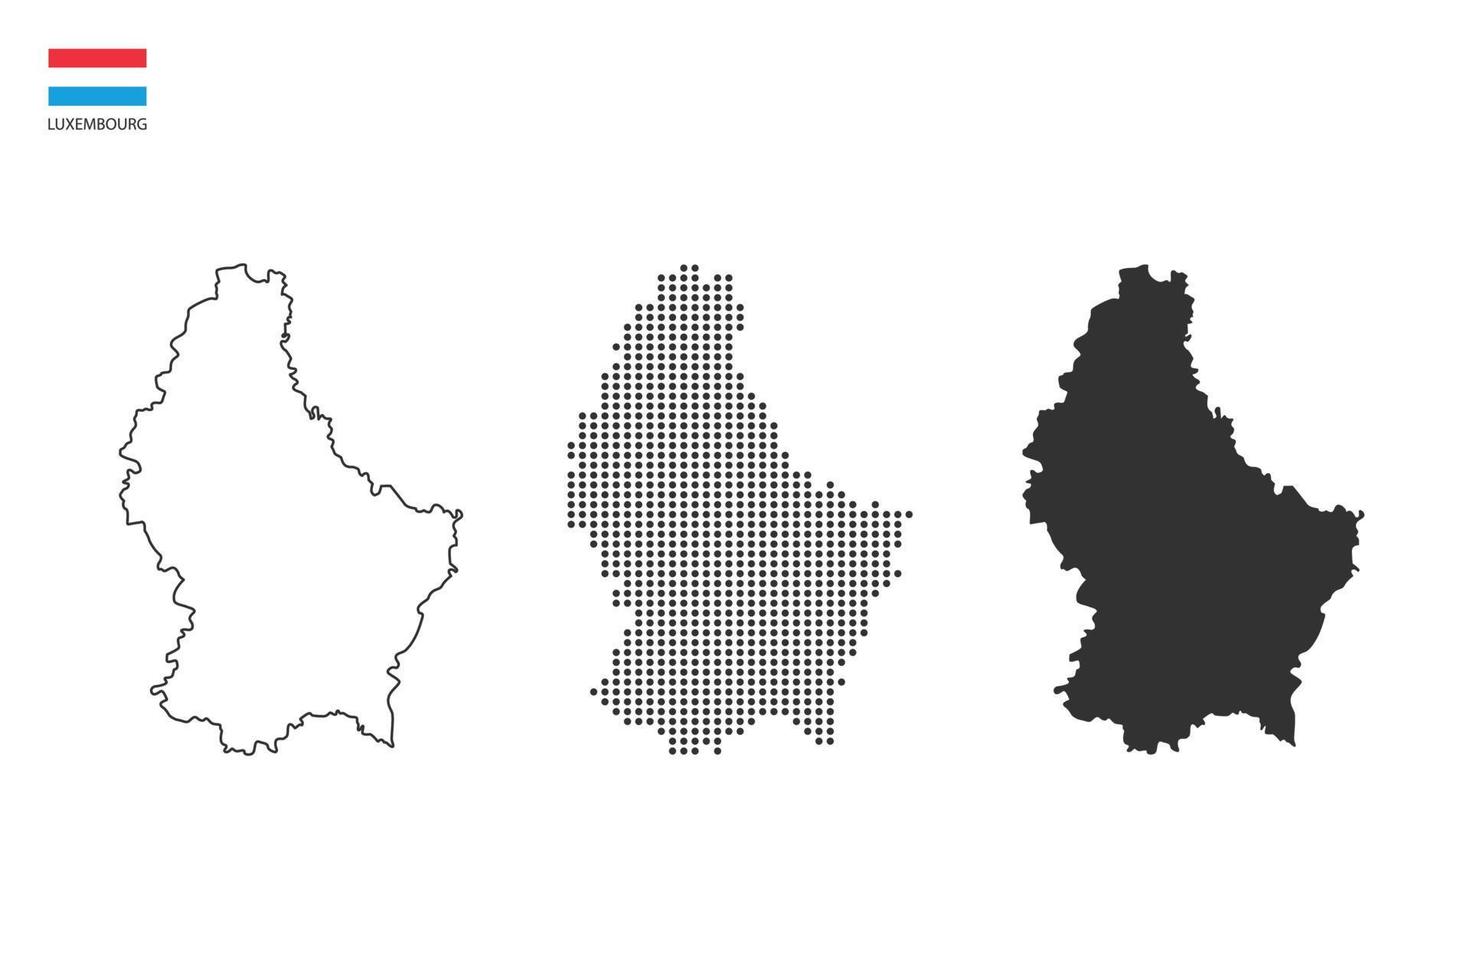 3 versões do vetor da cidade do mapa de luxemburgo pelo estilo de simplicidade de contorno preto fino, estilo de ponto preto e estilo de sombra escura. tudo no fundo branco.